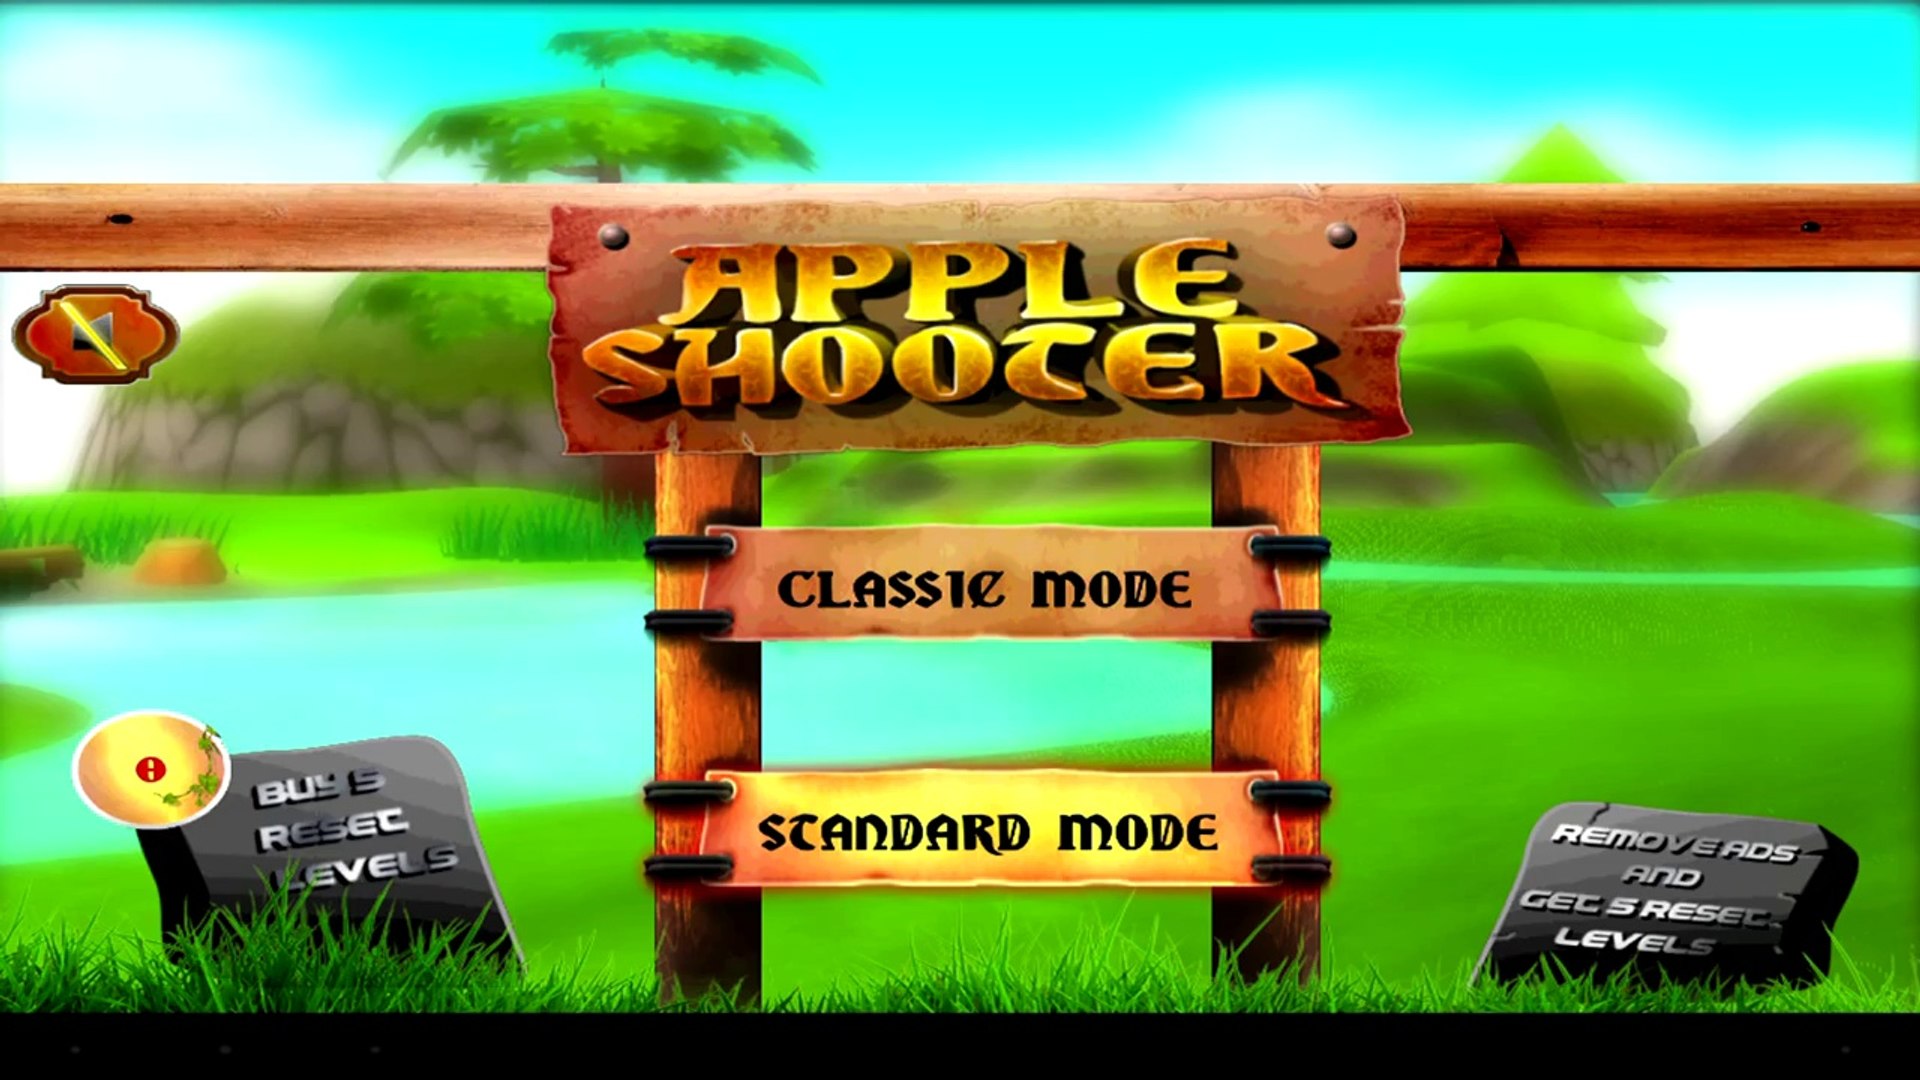 mlb games on apple tv plus